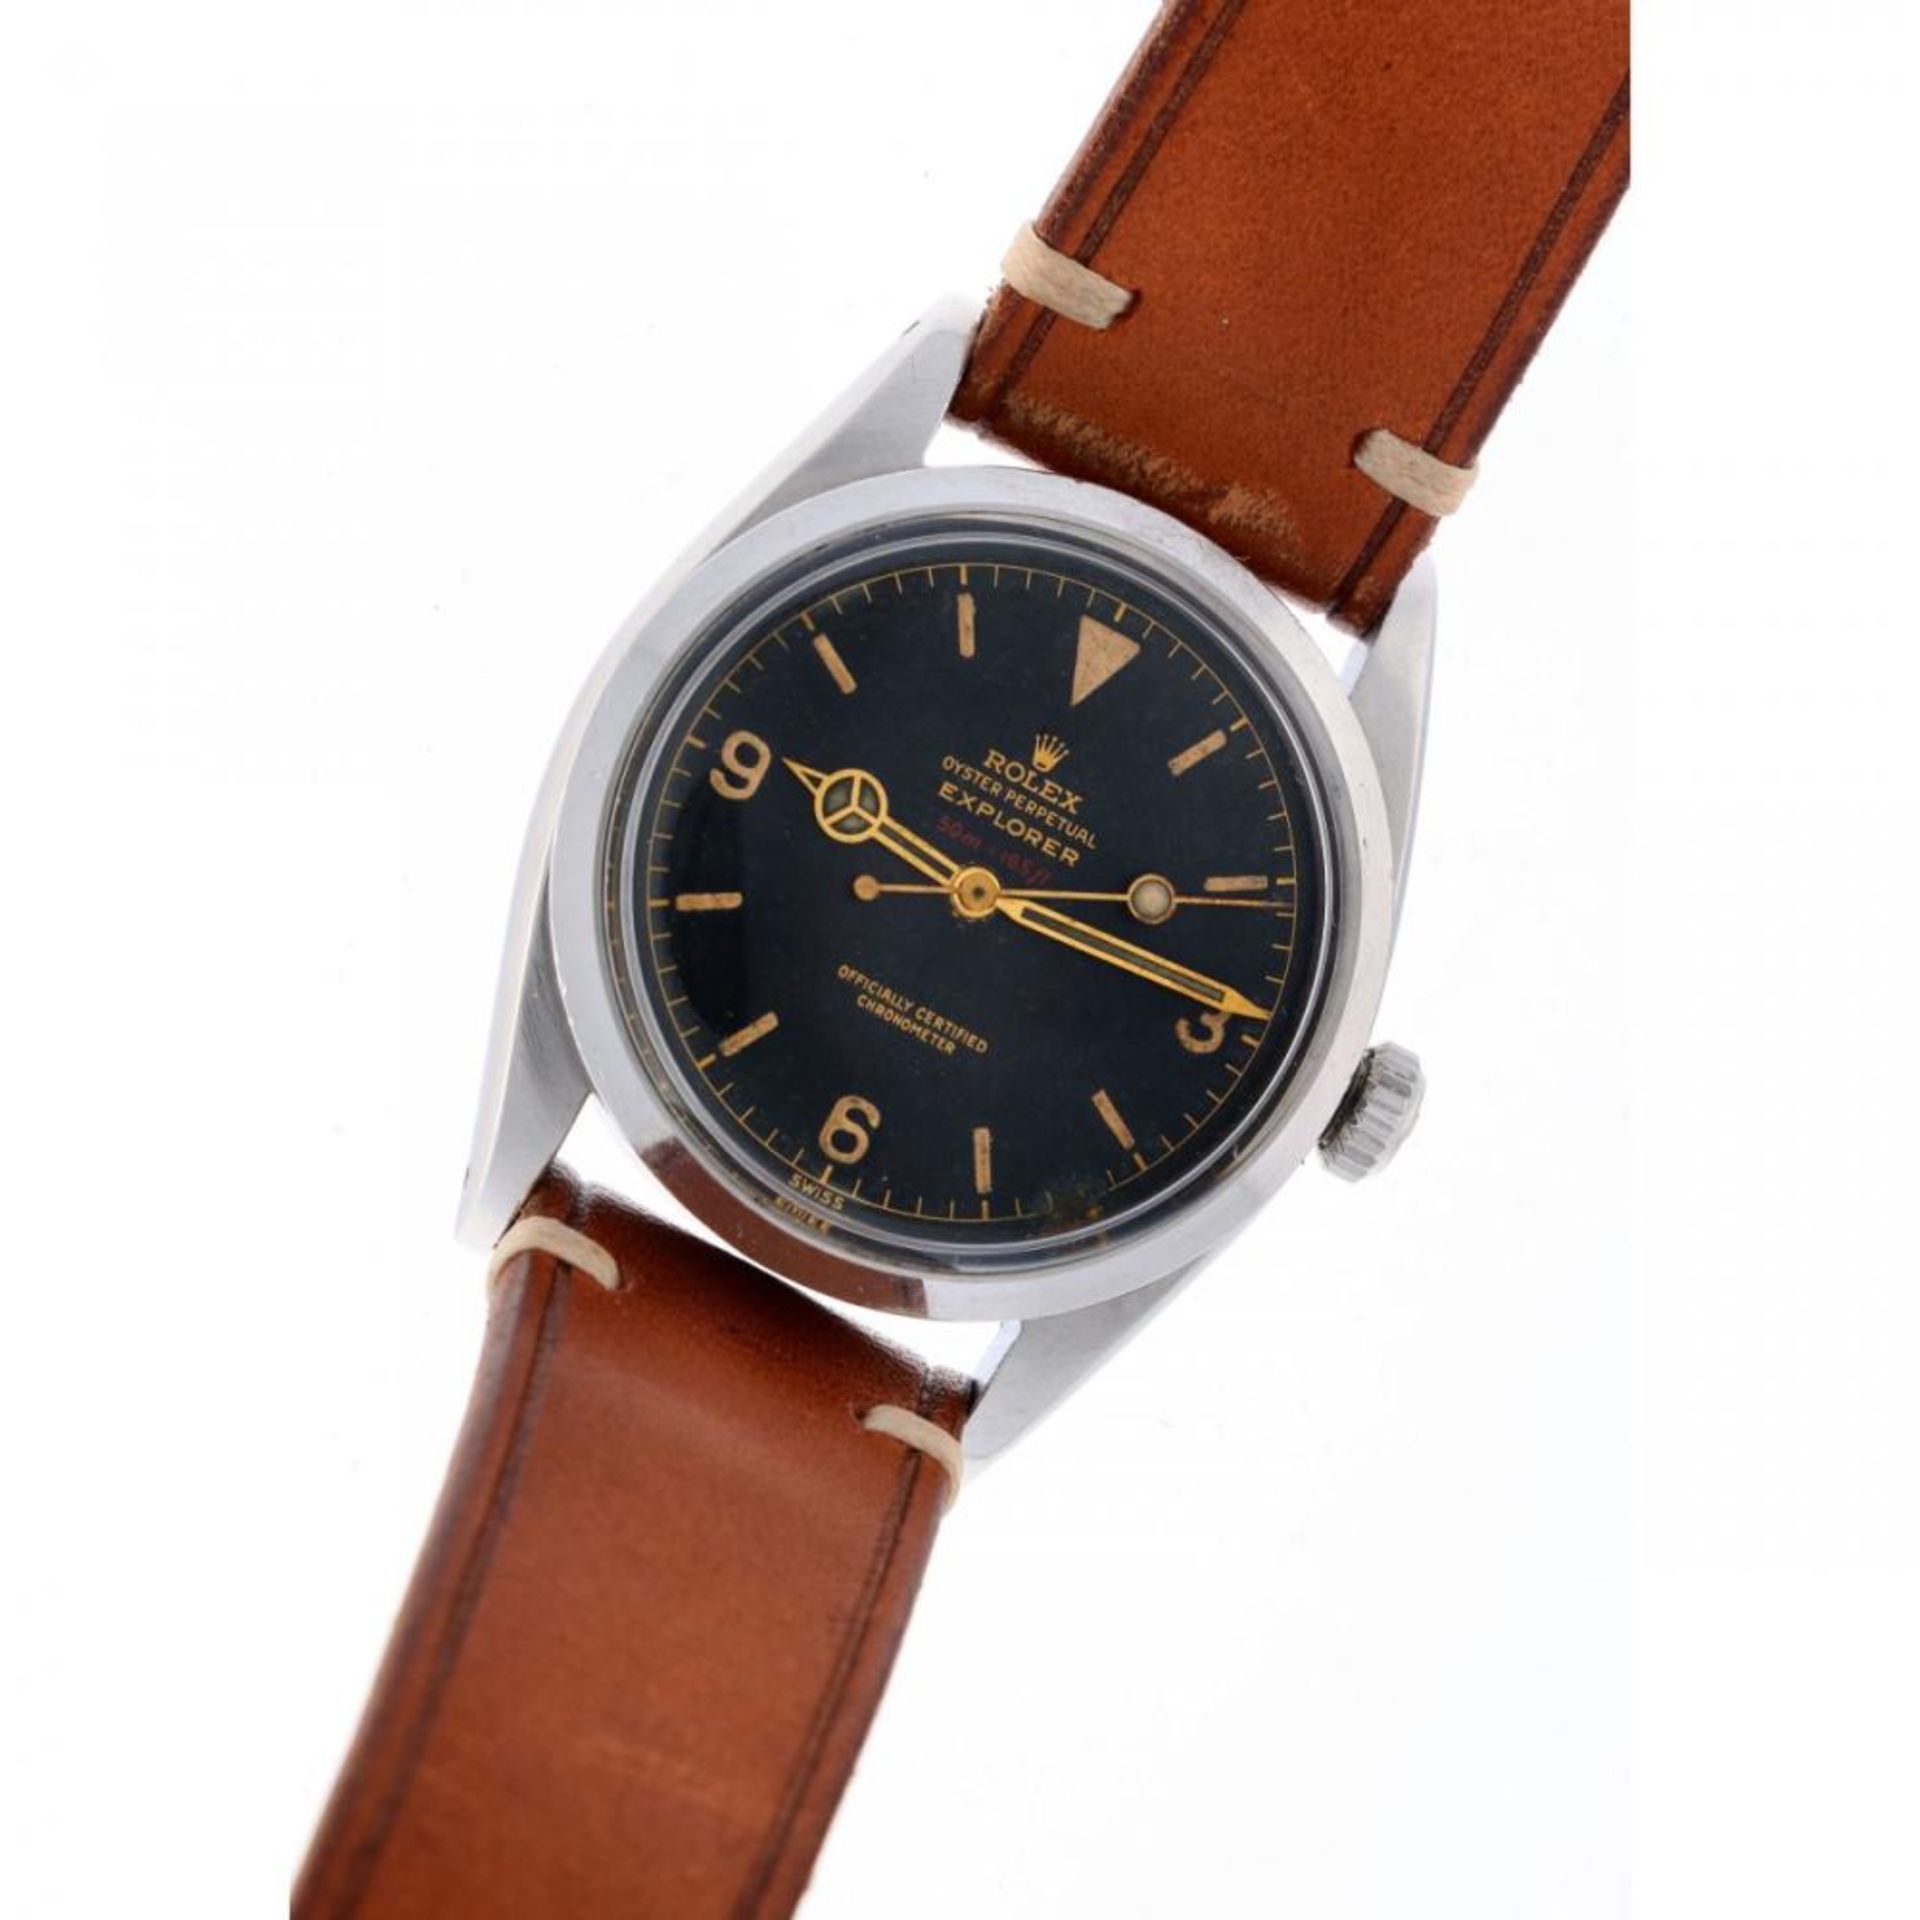 Rolex Explorer Red Depth Rating 6610 - Men's watch - 1956. - Image 6 of 10